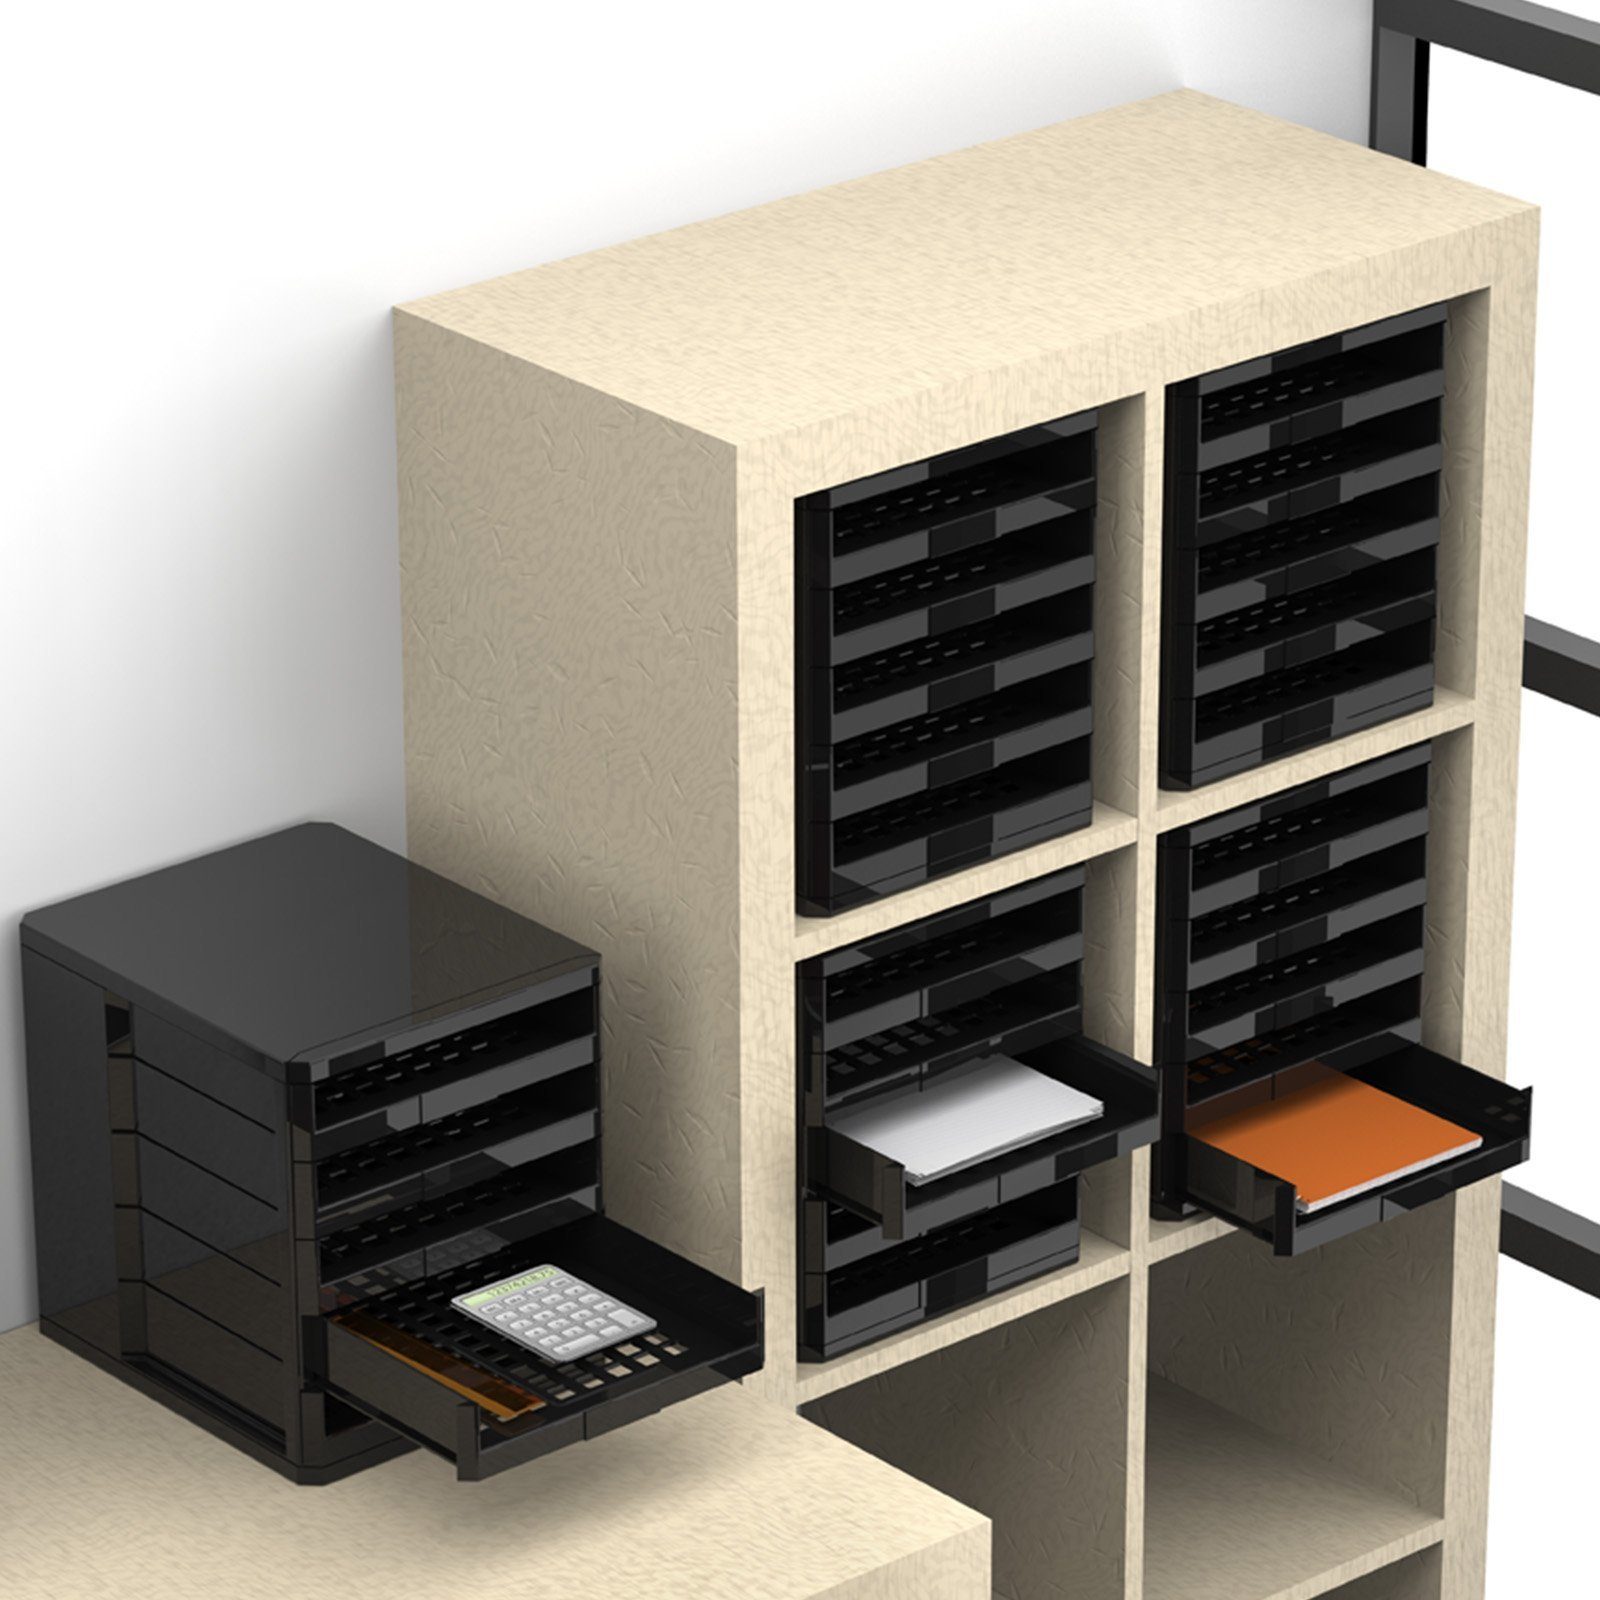 schwarz Ablagen SO-TECH® ausziehbaren 275 x Büroablage x 5 Aufbewahrungssystem mit Kunststoff, 330 mm Schubladenbox, 320